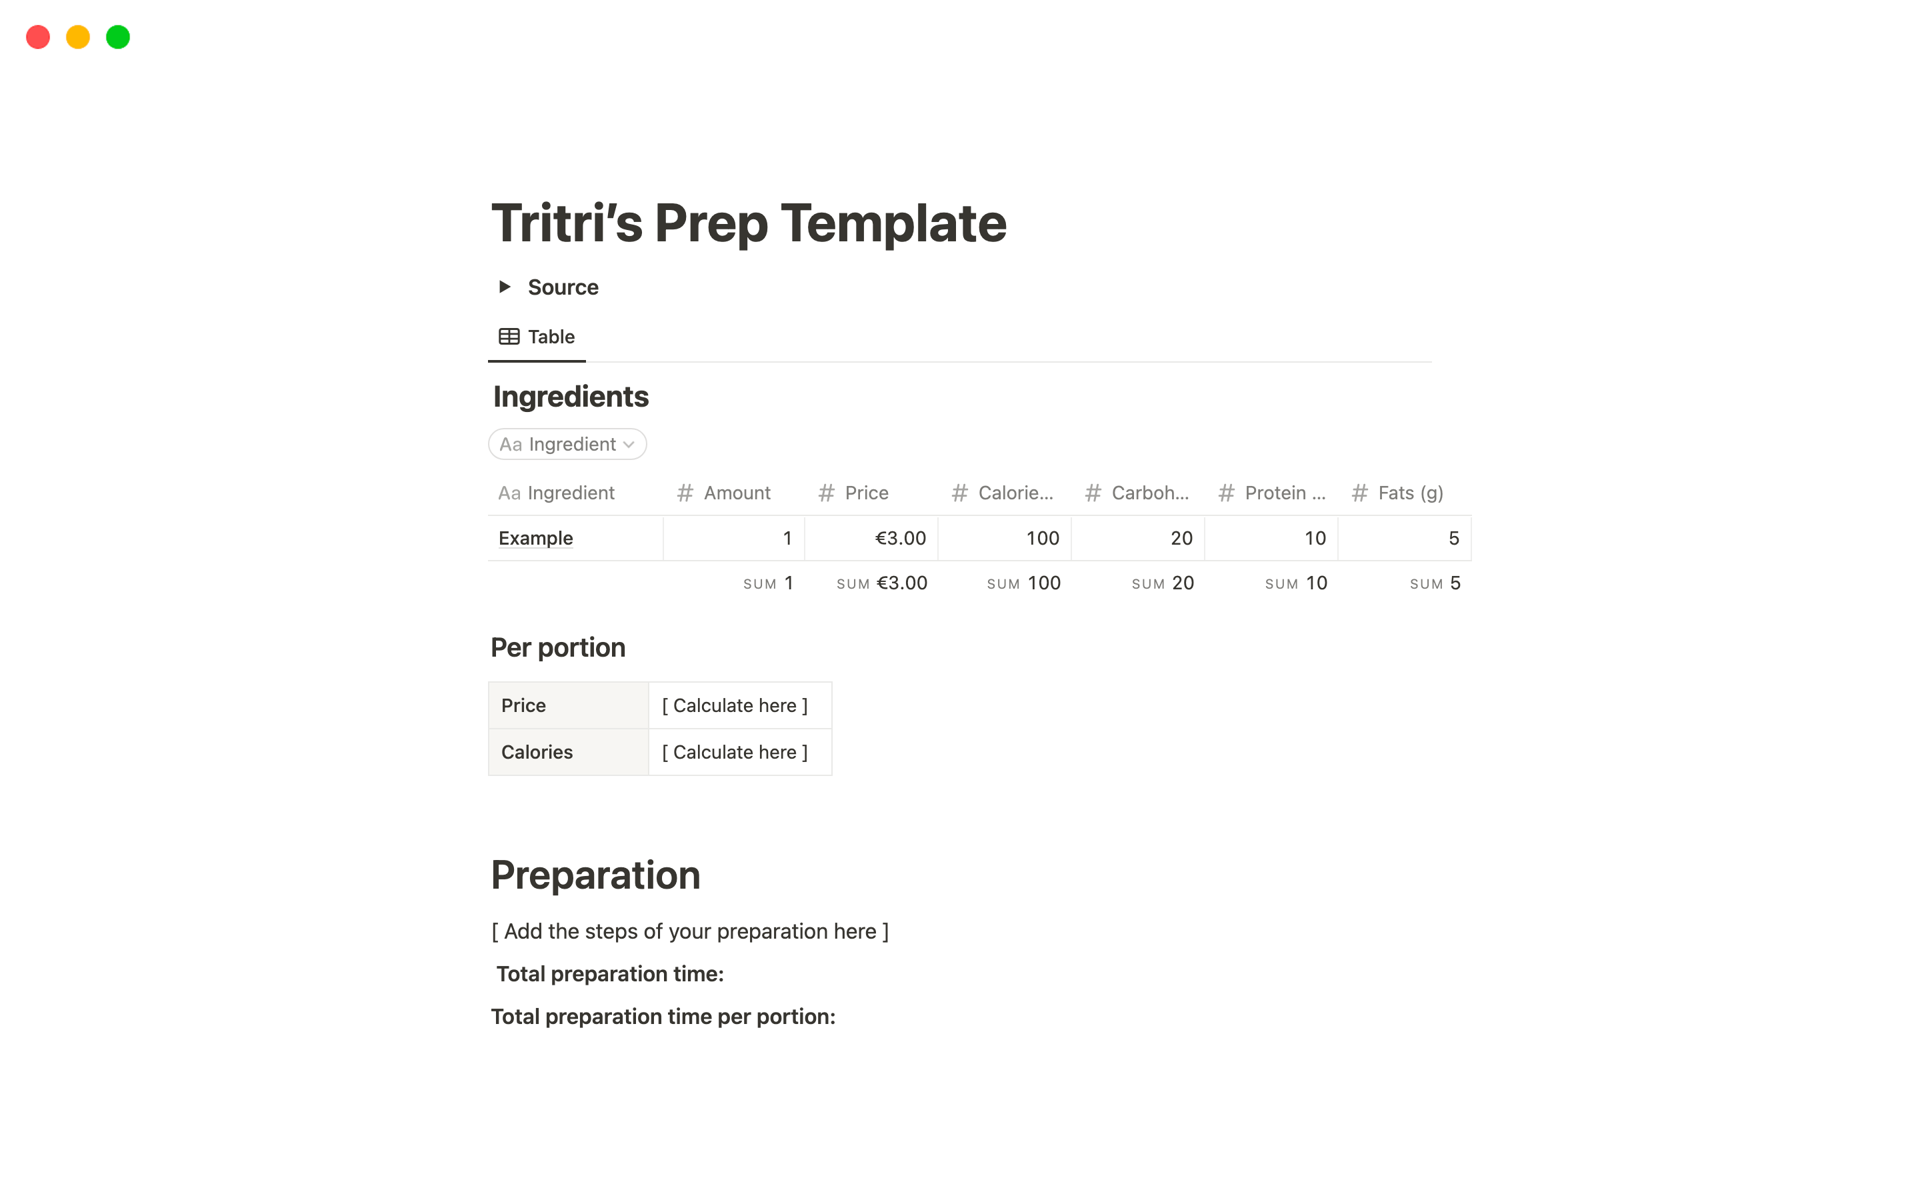 Vista previa de una plantilla para Tritri’s Prep Template